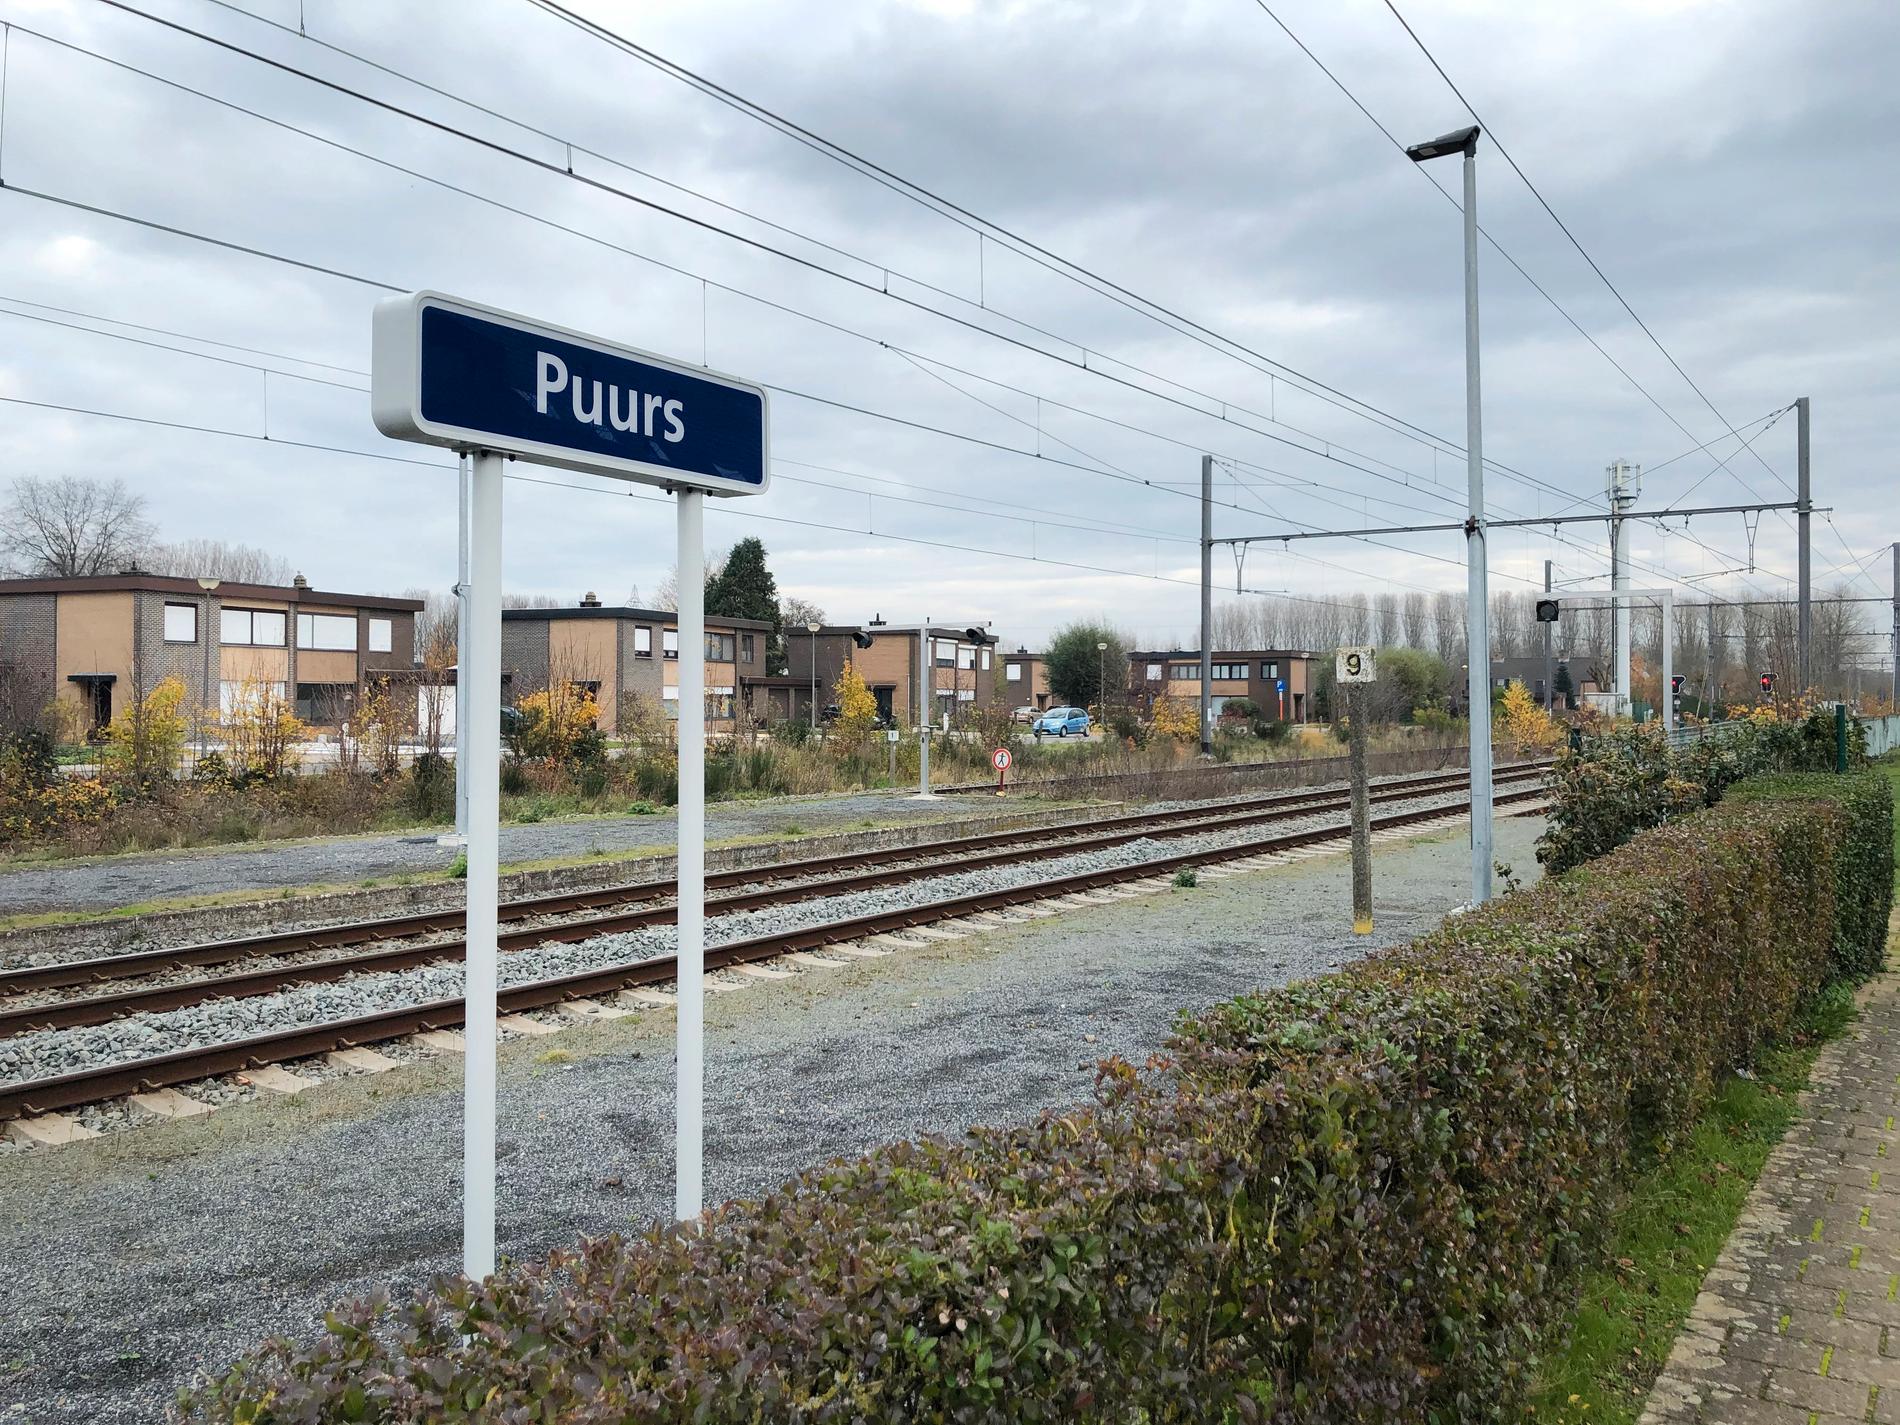 Småstaden Puurs ligger strategiskt, mellan hamnen i Antwerpen och flygplatsen i Bryssel och med goda bil- och järnvägsförbindelser.